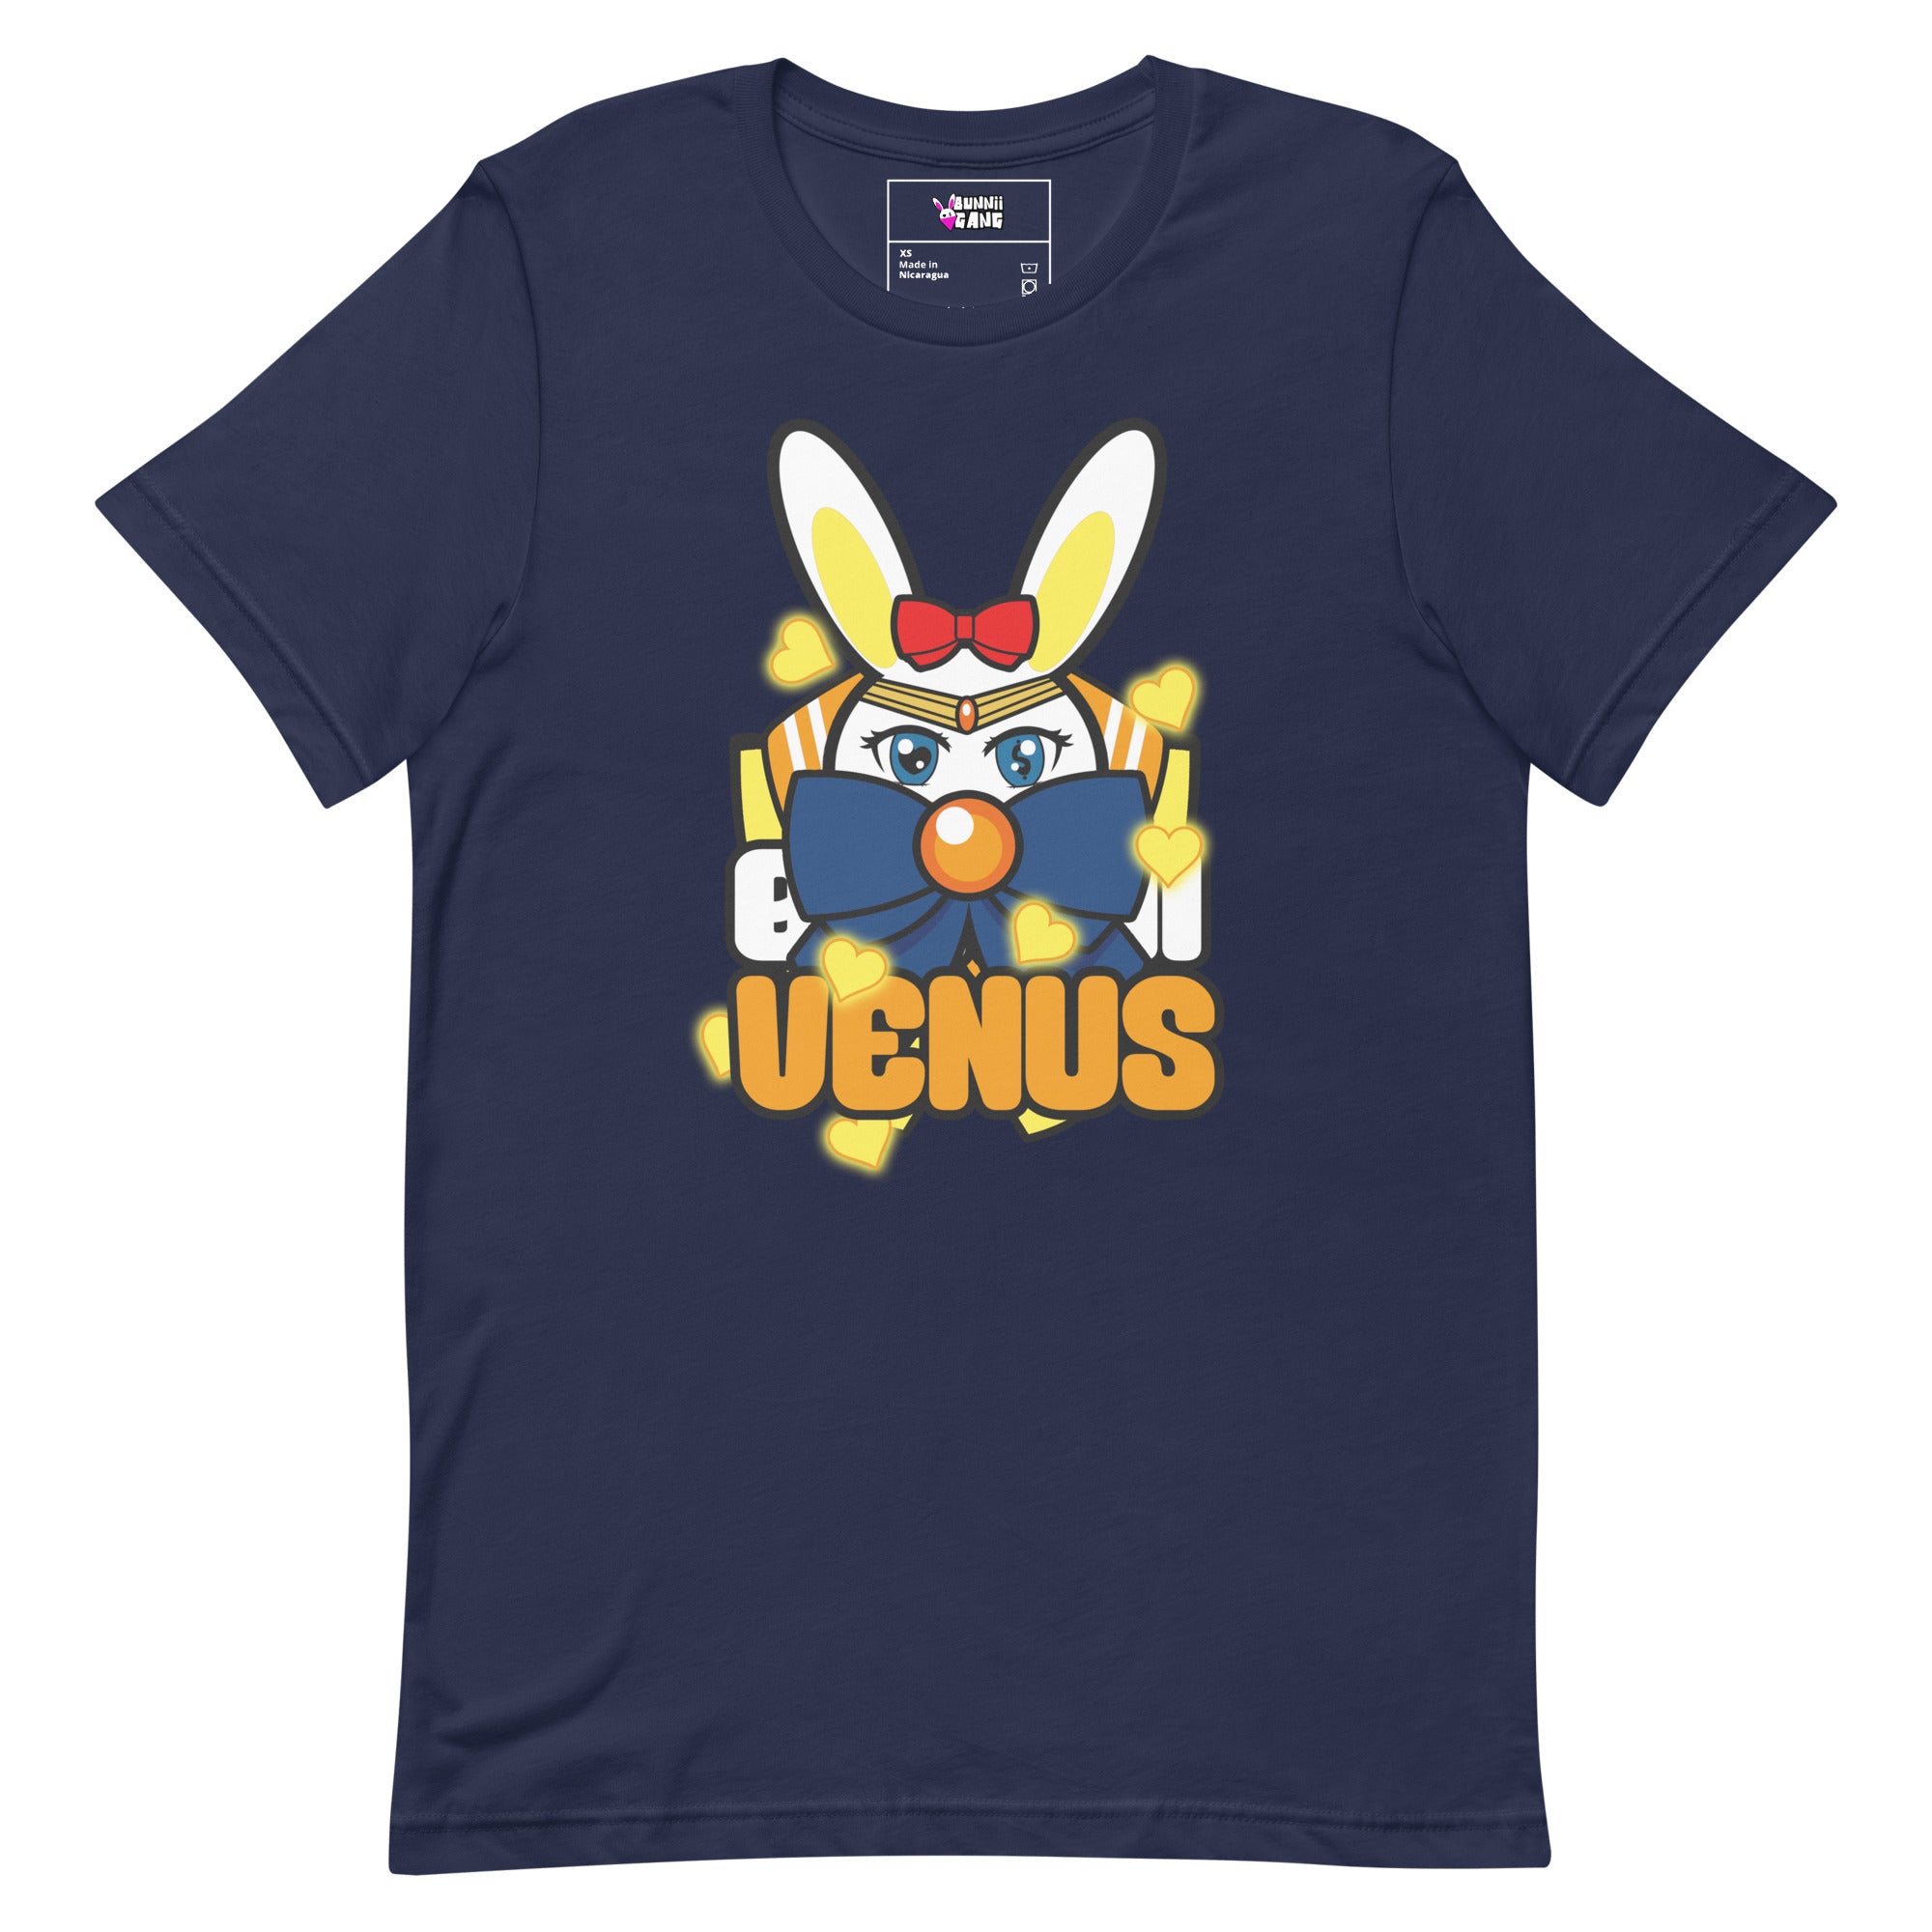 BUNNII GANG "BUNNII VENUS" Unisex t-shirt